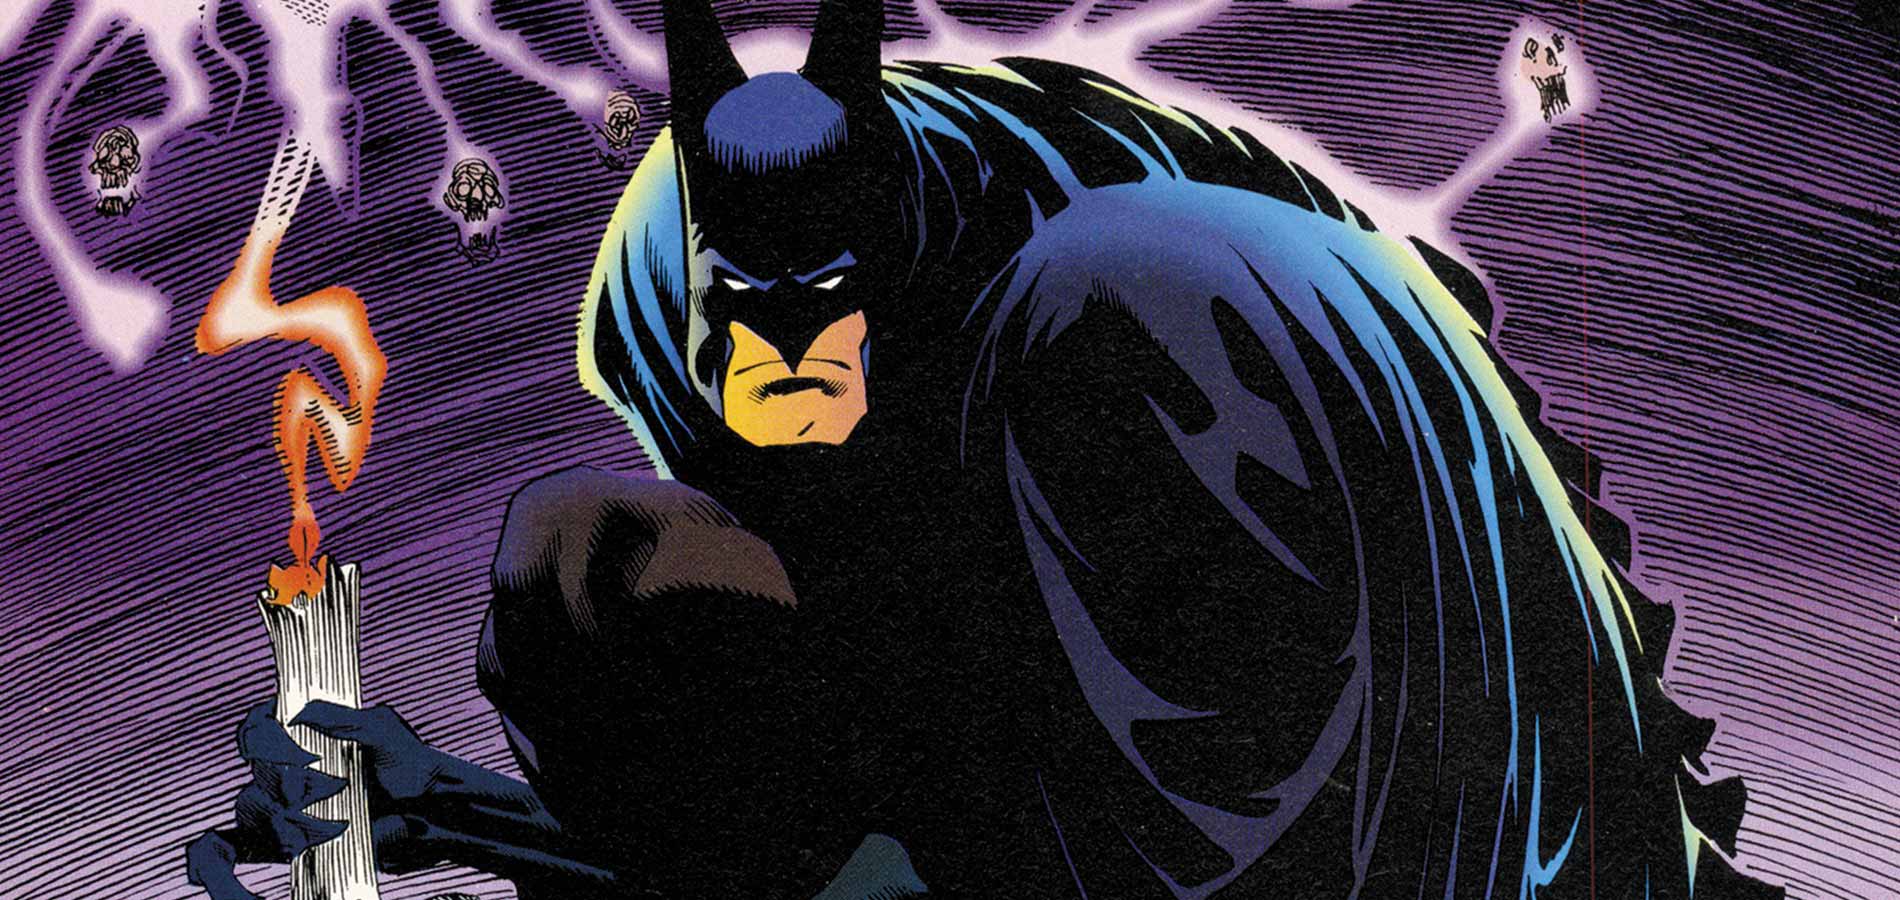 Batman Doug Moench and Kelley Jones Volume 1 Review